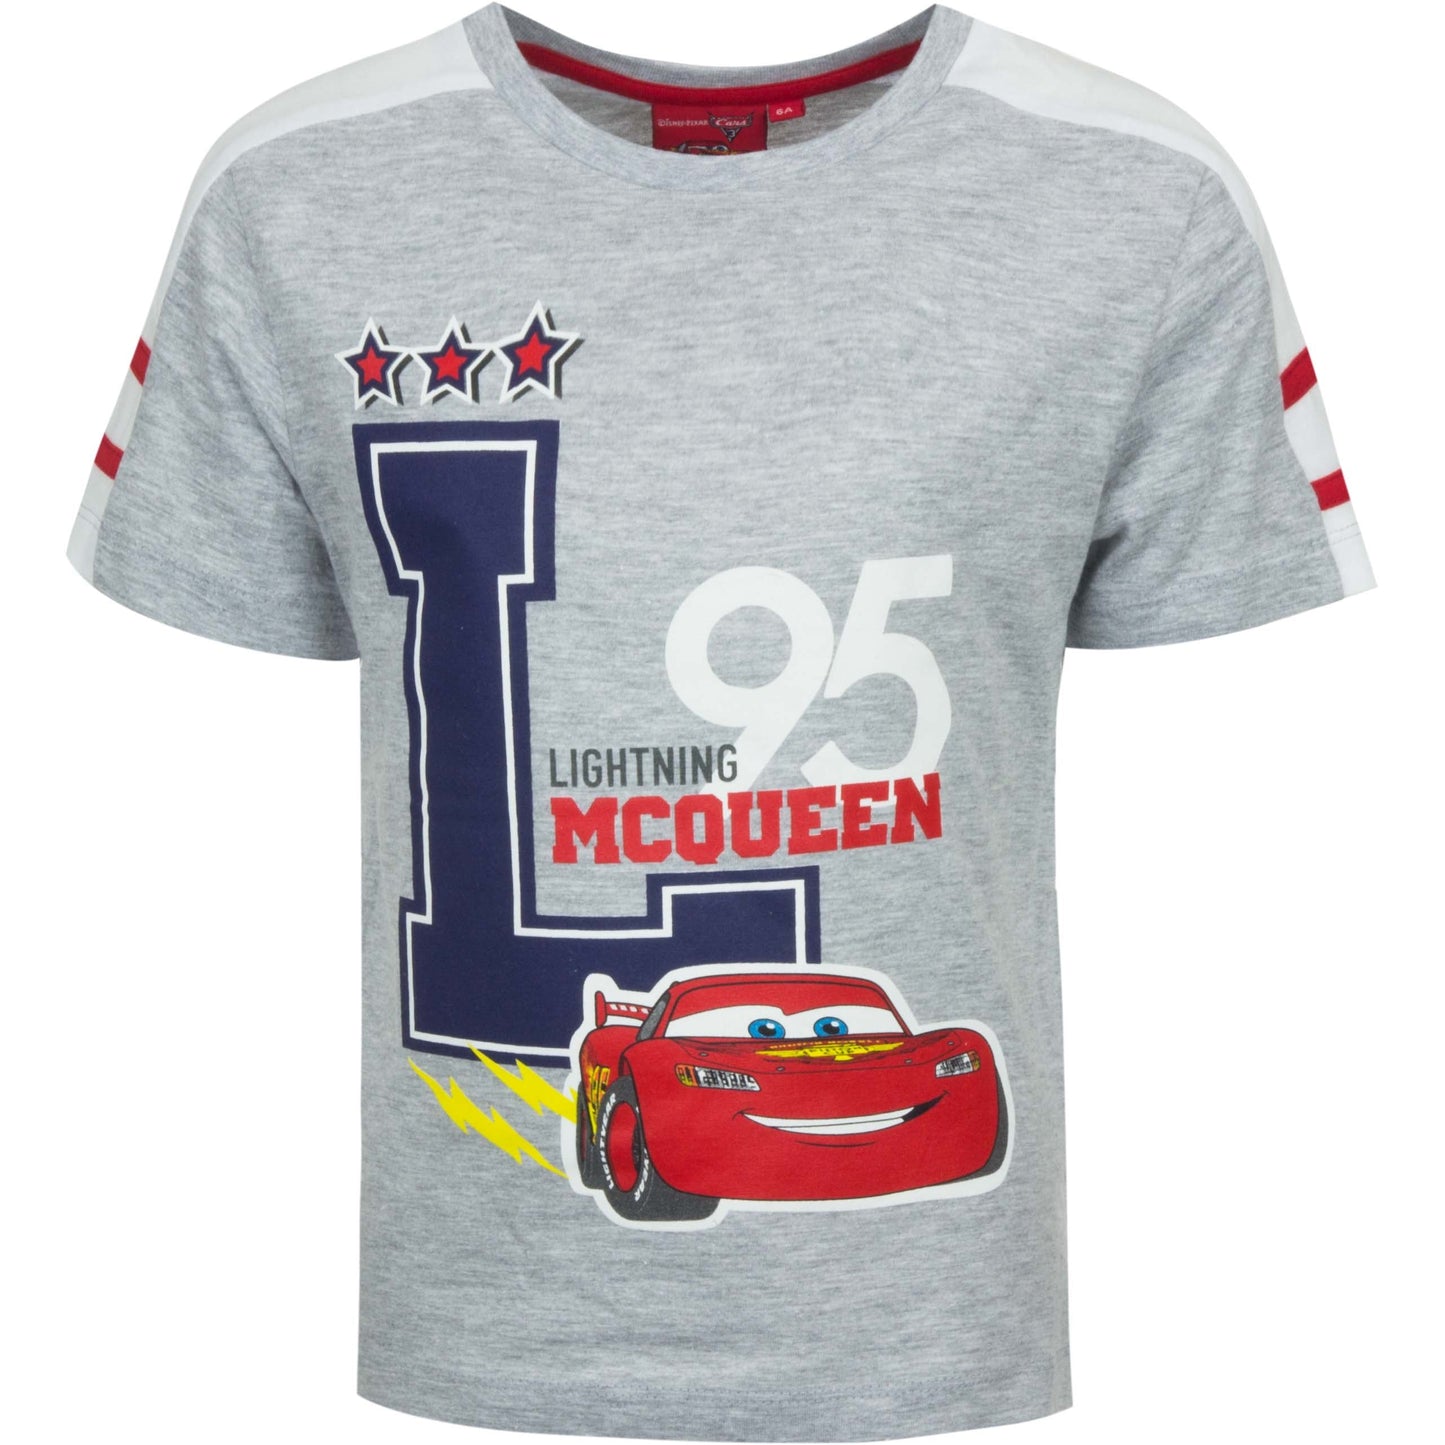 Disney Cars Kinder Shirt Lightning McQueen Motiv | Fashion Königin